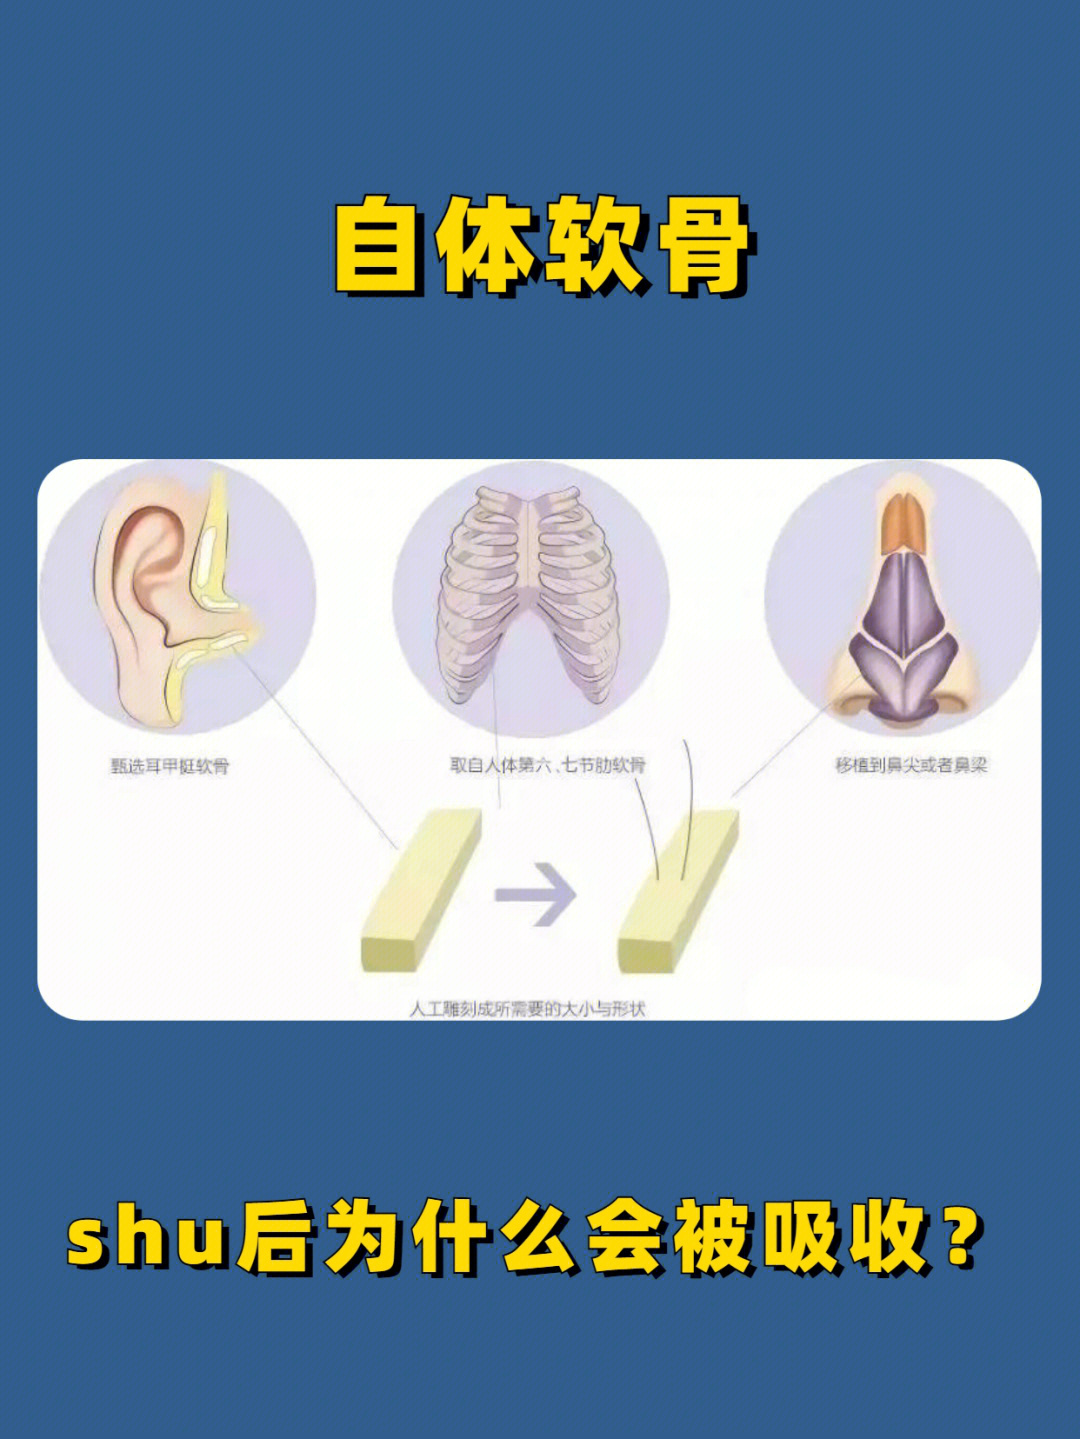 耳软骨是一种弹性软骨,取耳软骨做鼻z合时,需要的养分较多,shu后支撑